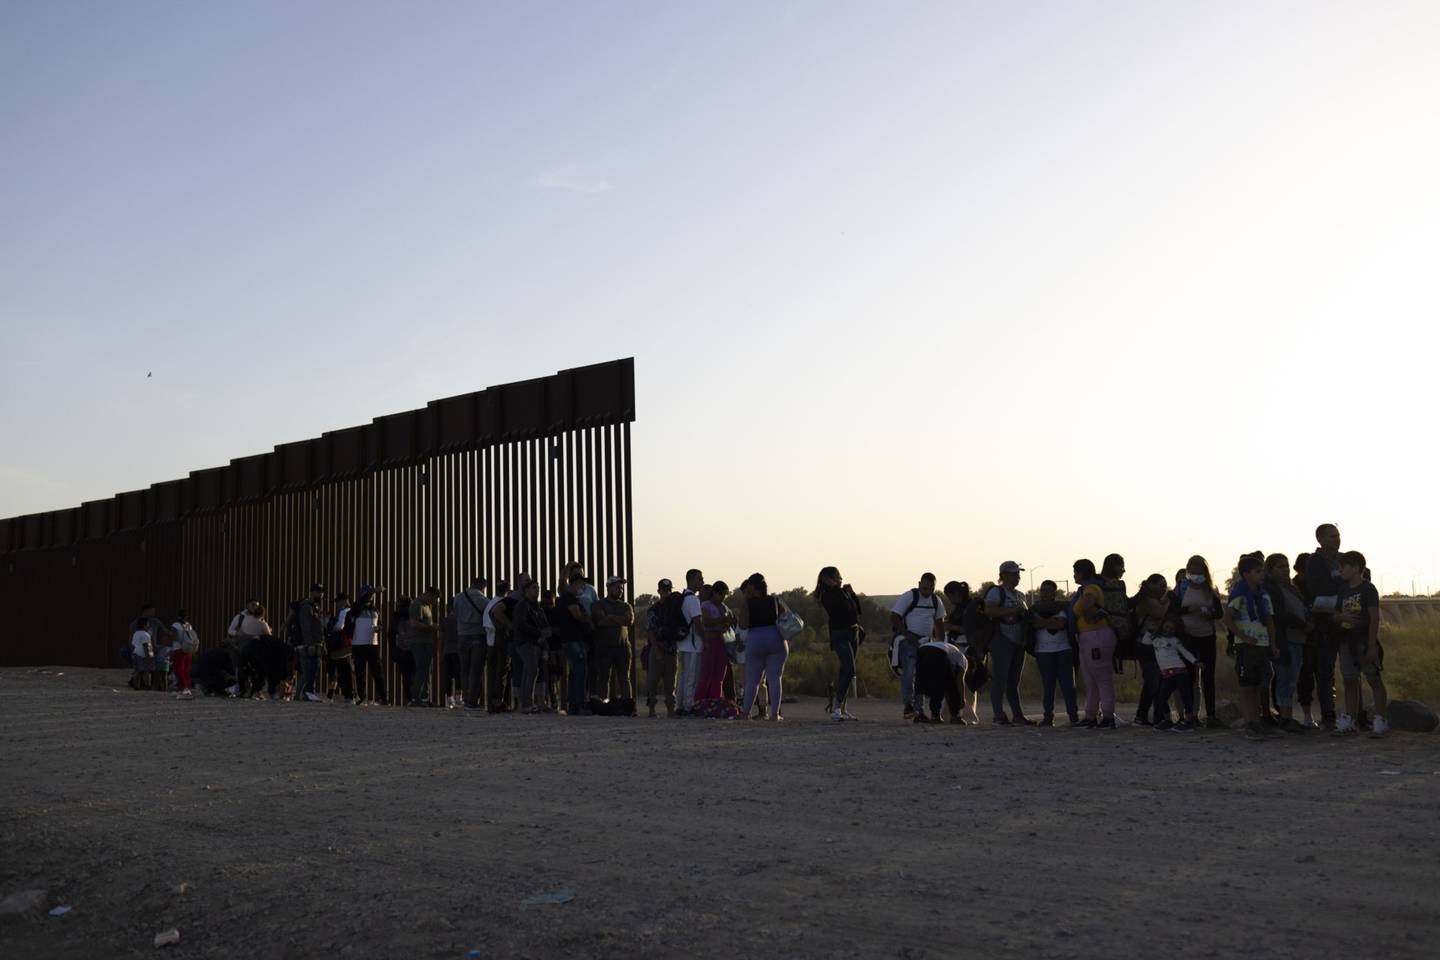 Migrantes en busca de asilo esperan a ser procesados por agentes de la Patrulla Fronteriza de Estados Unidos tras cruzar la frontera entre México y Estados Unidos en Yuma, Arizona, Estados Unidos.